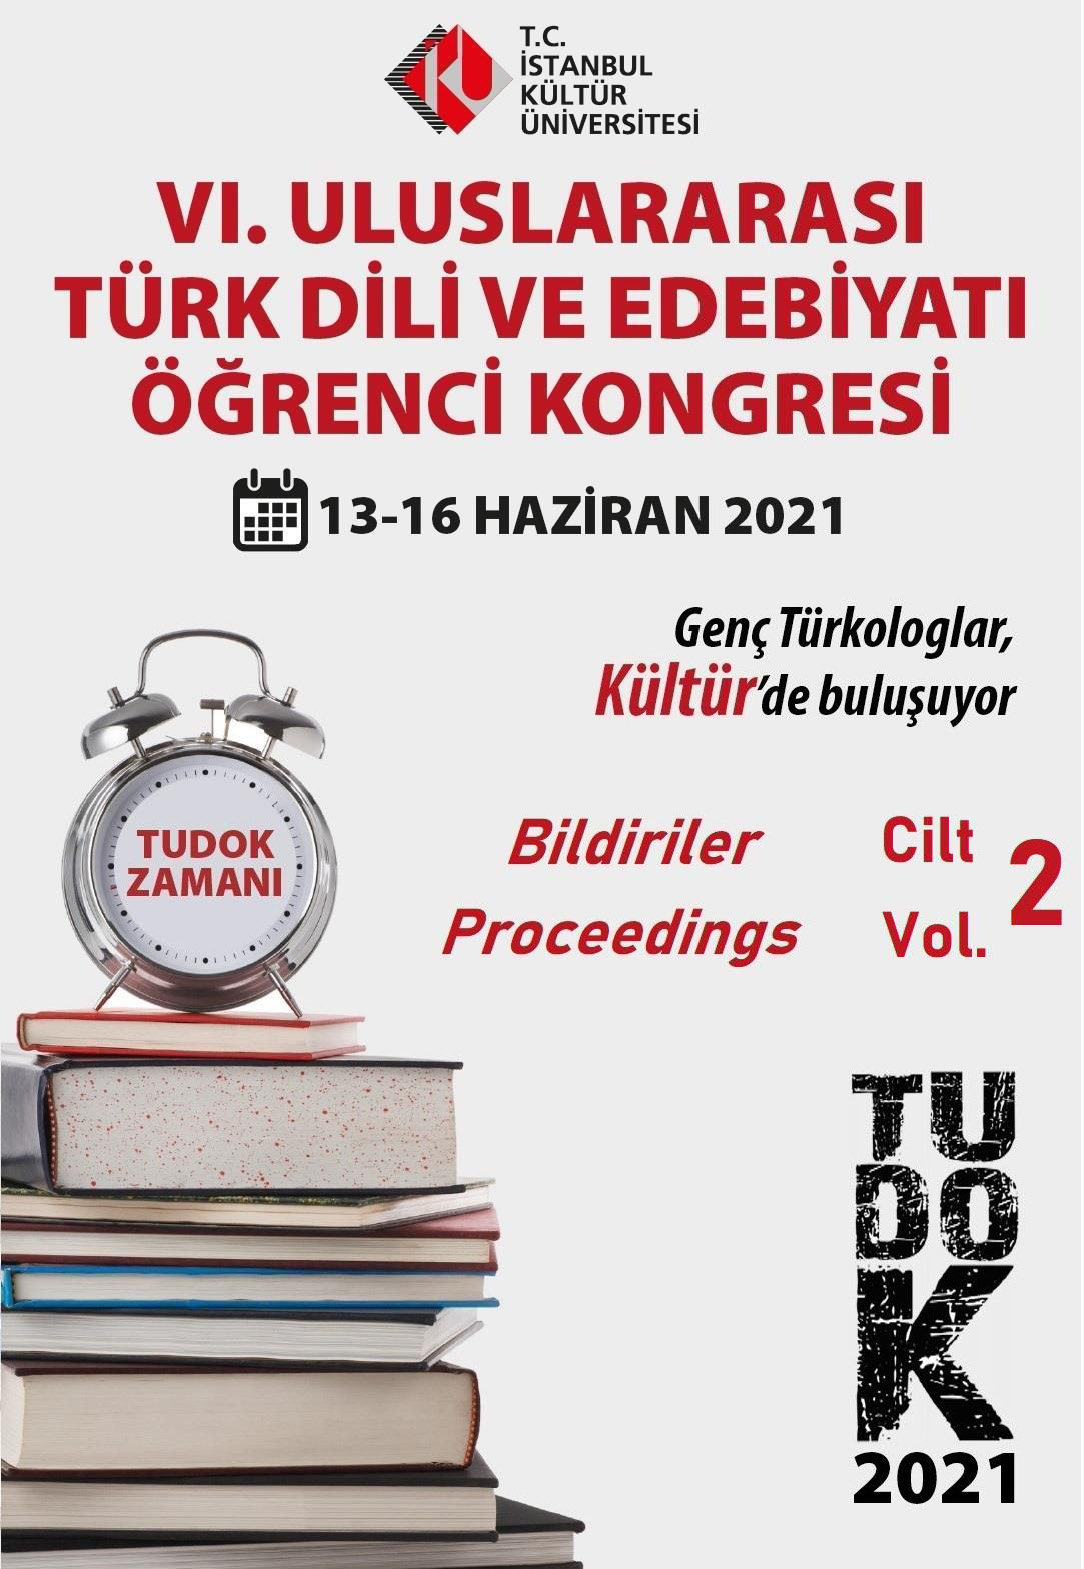 VI. Uluslararası Türk Dili ve Edebiyatı Öğrenci Kongresi Kitabı Yayınlandı